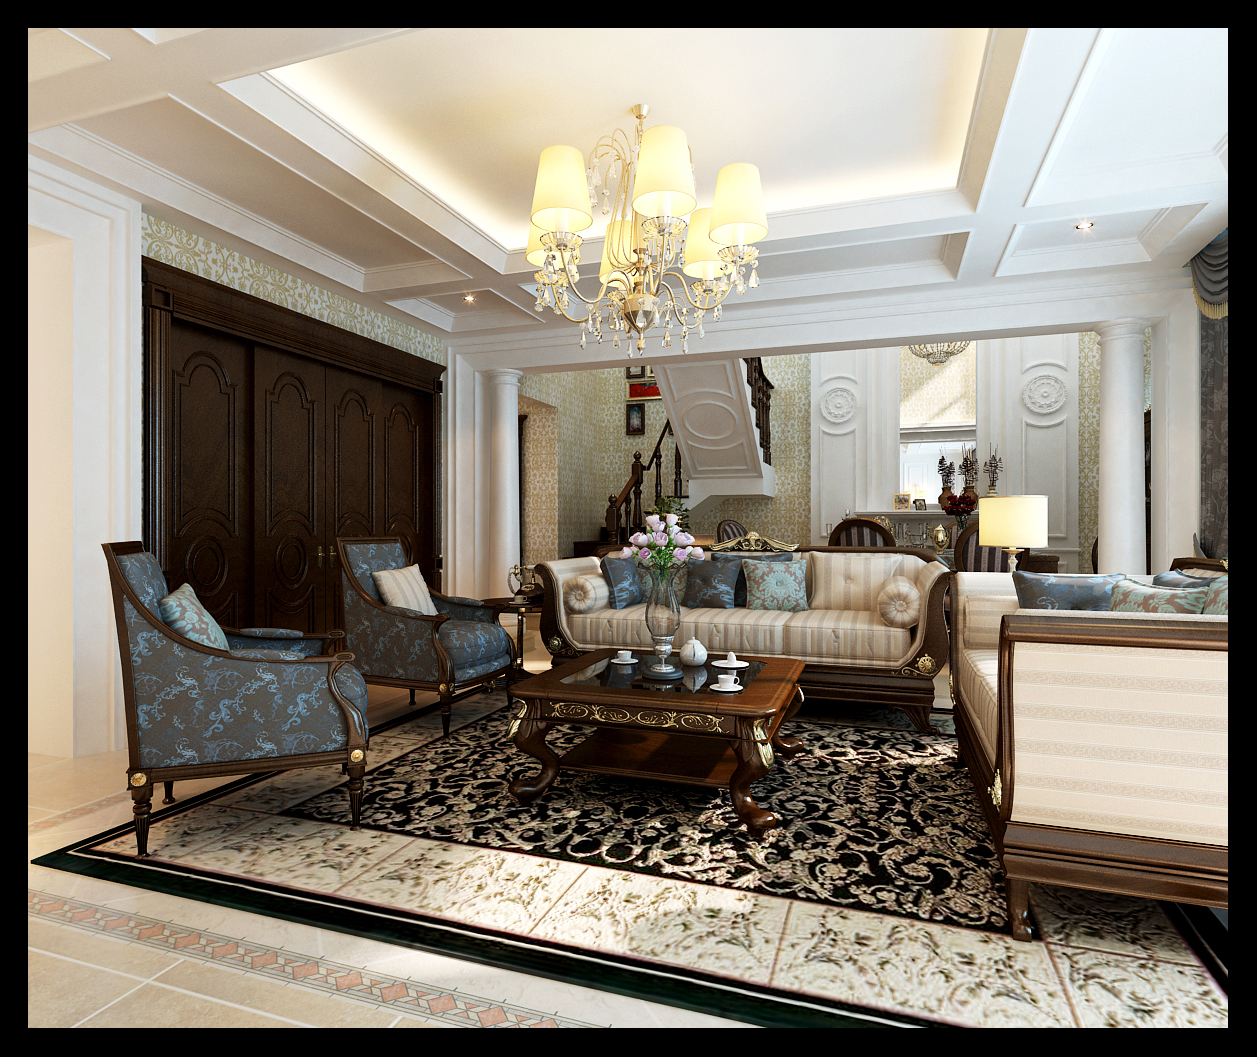 混搭 别墅 小资 80后 白领 客厅图片来自晋级装饰小金在凯旋门中式混搭赏析的分享